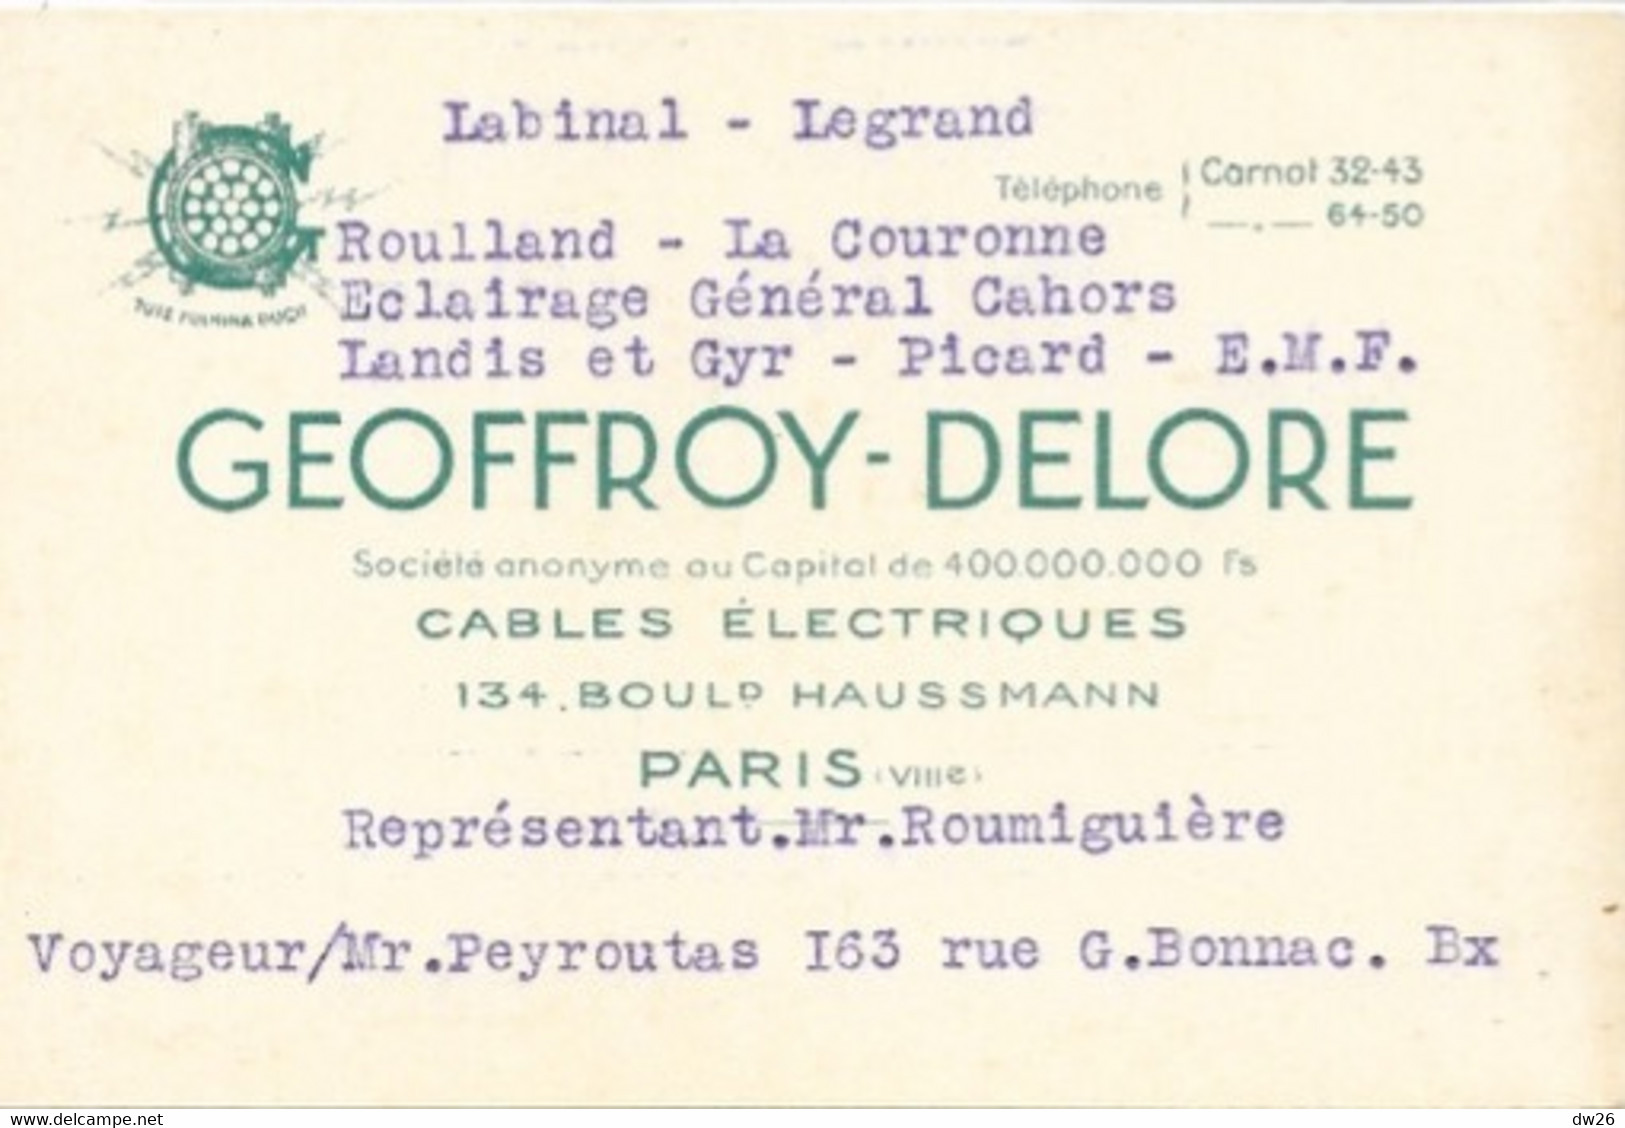 Carte De Représentant (M. Roumiguière) Cables Electriques Geoffroy-Delore, Boulevard Haussmann, Paris - Cartes De Visite